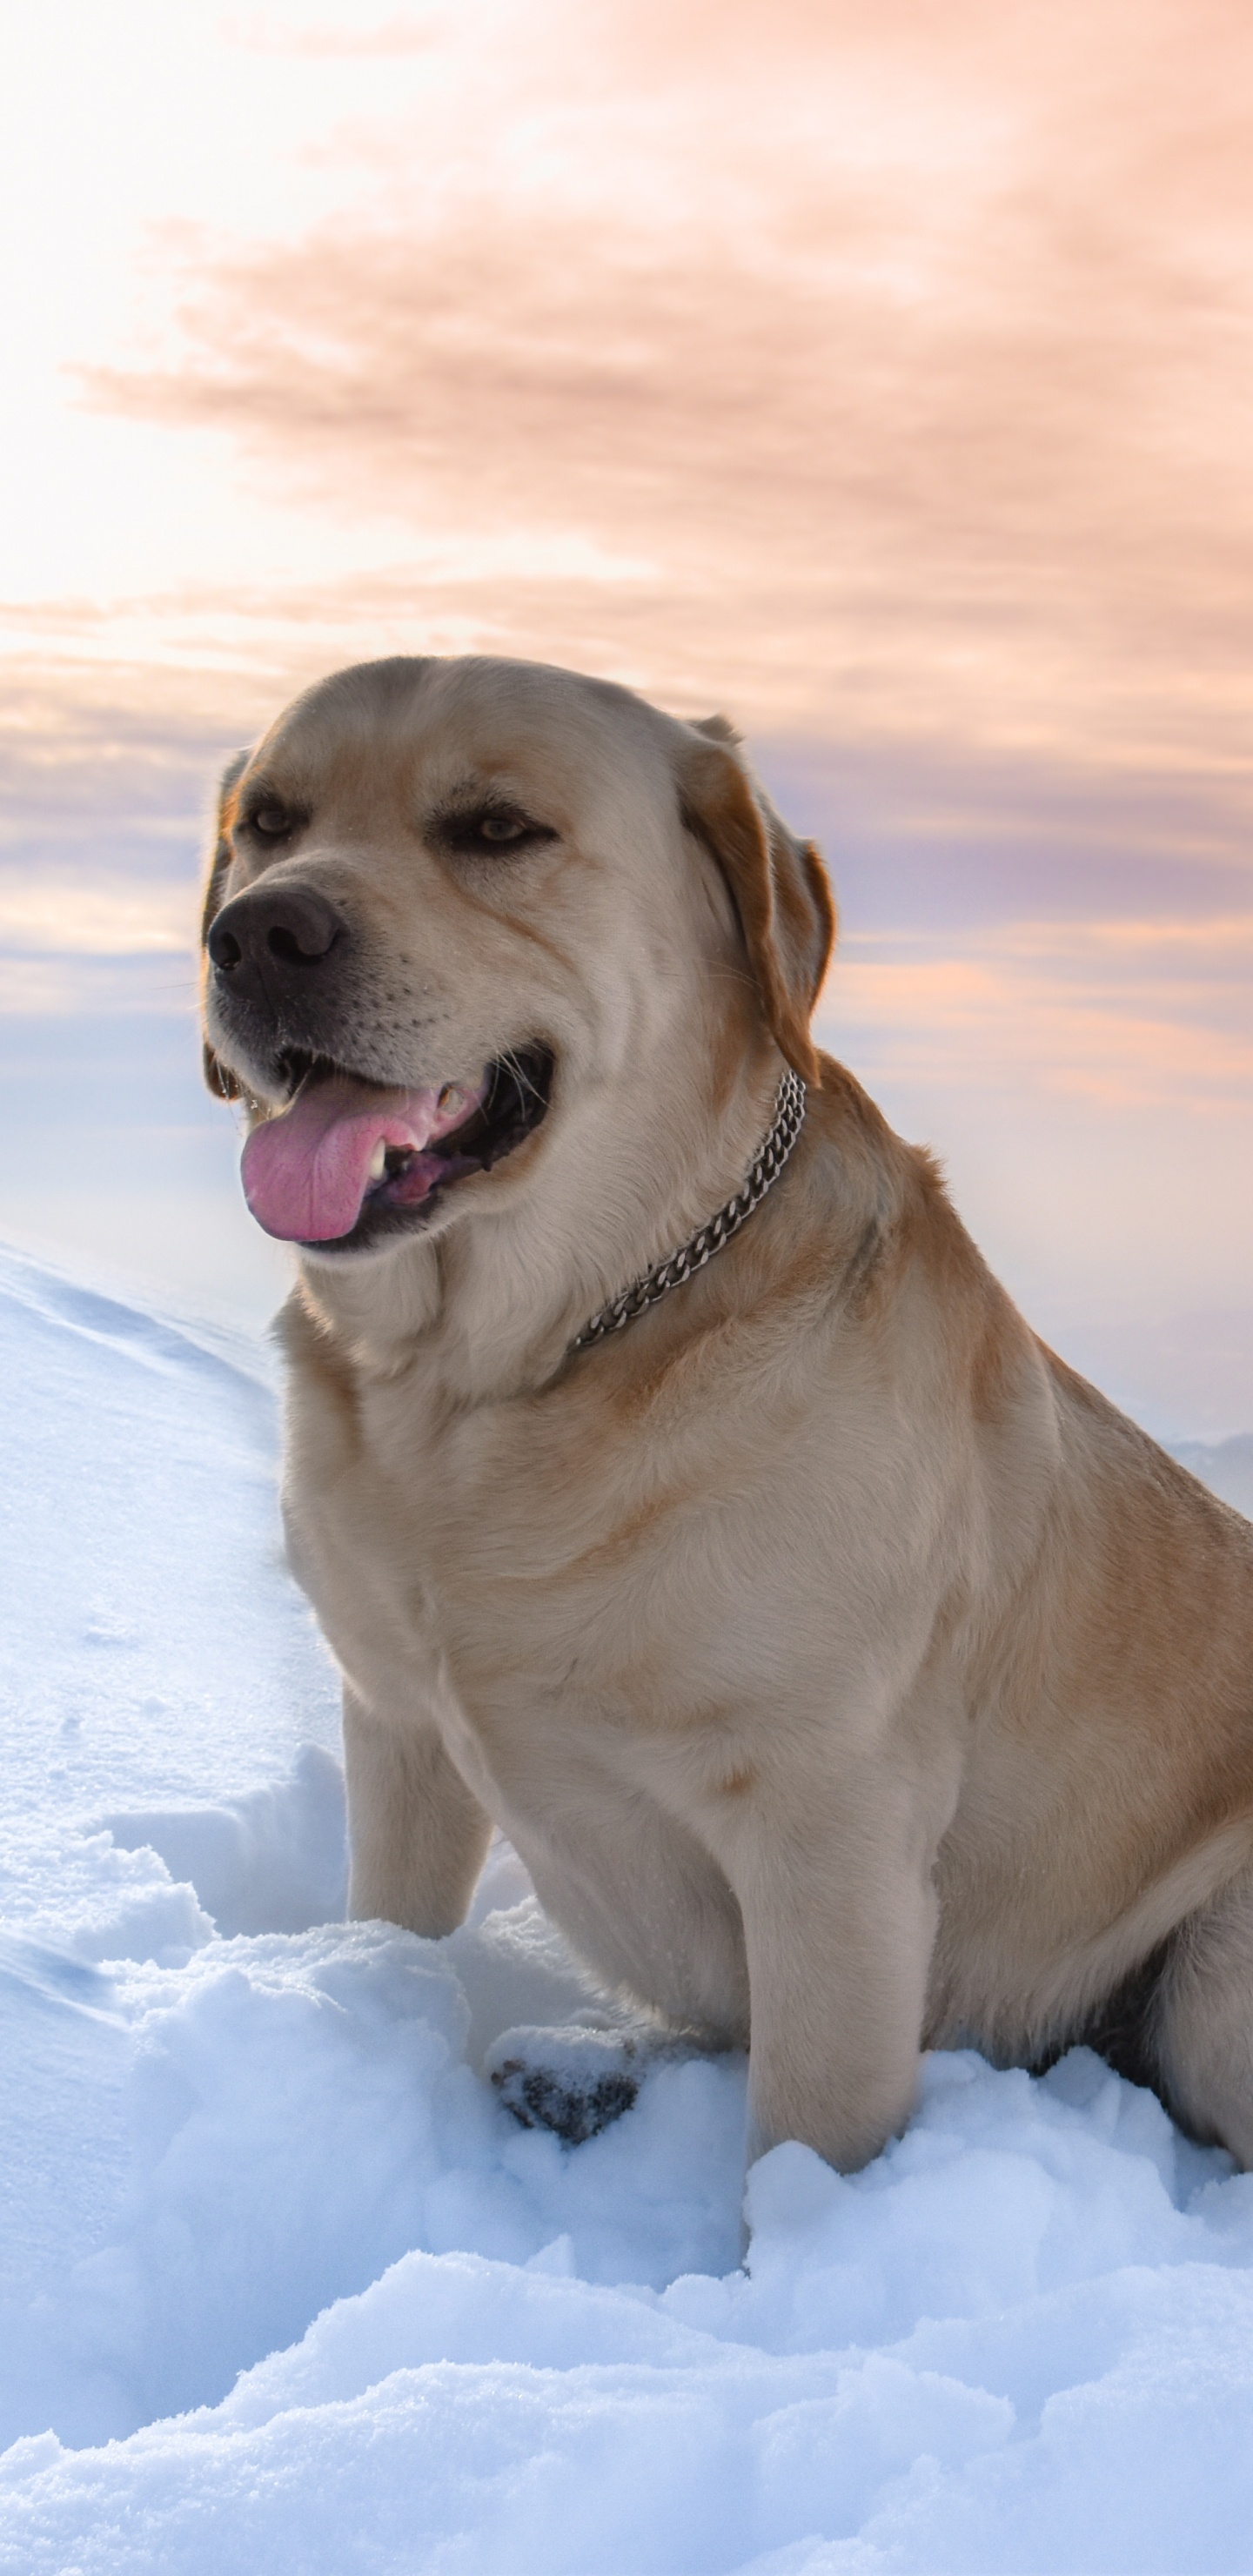 拉布拉多犬, 品种的狗, 黄金猎犬, 狗喜欢哺乳动物, 顶级掠食者 壁纸 1440x2960 允许